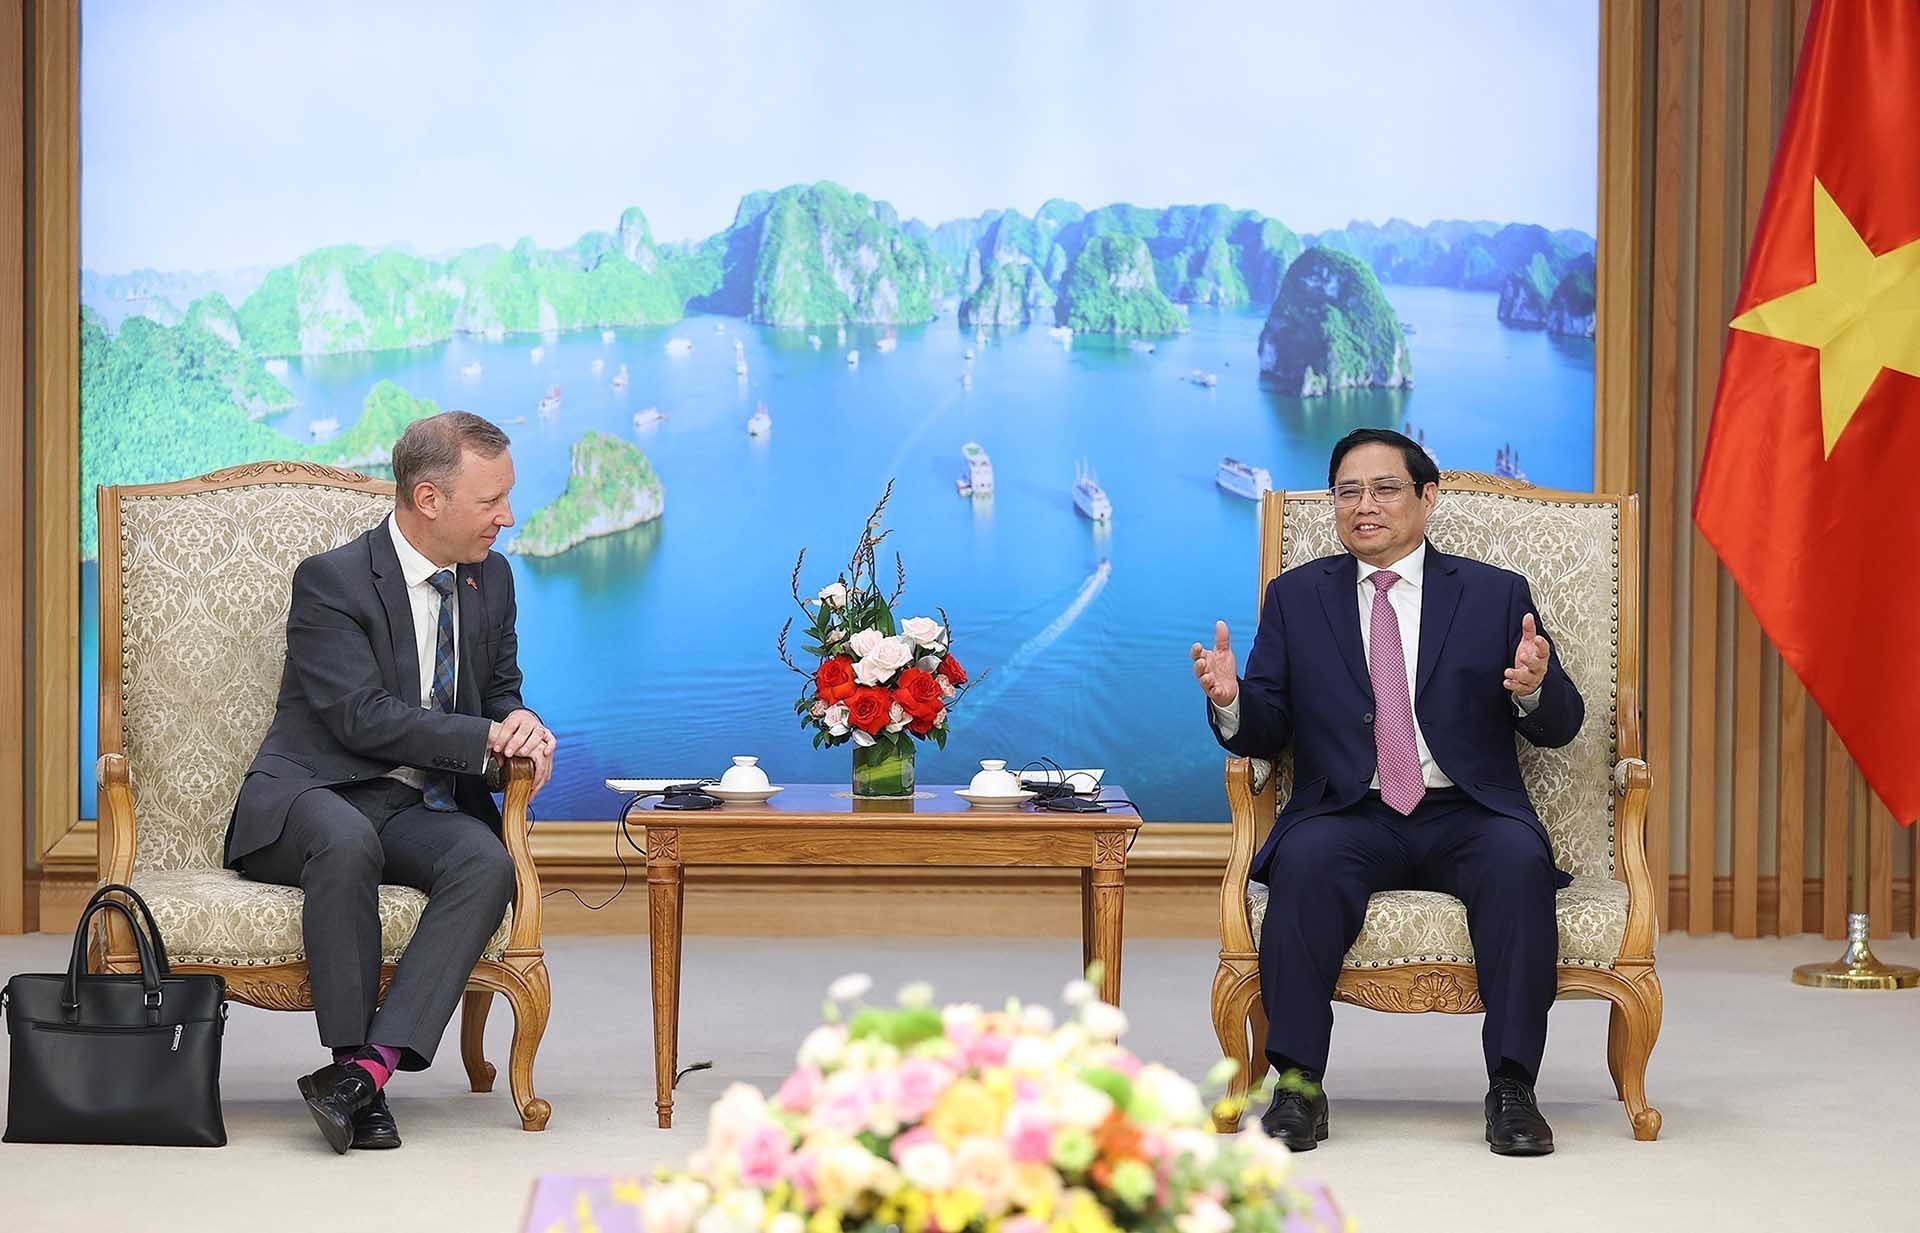 Thủ tướng Phạm Minh Chính tiếp Đại sứ Liên hiệp Vương quốc Anh và Bắc Ireland Gareth Ward chào từ biệt. (Nguồn: TTXVN)